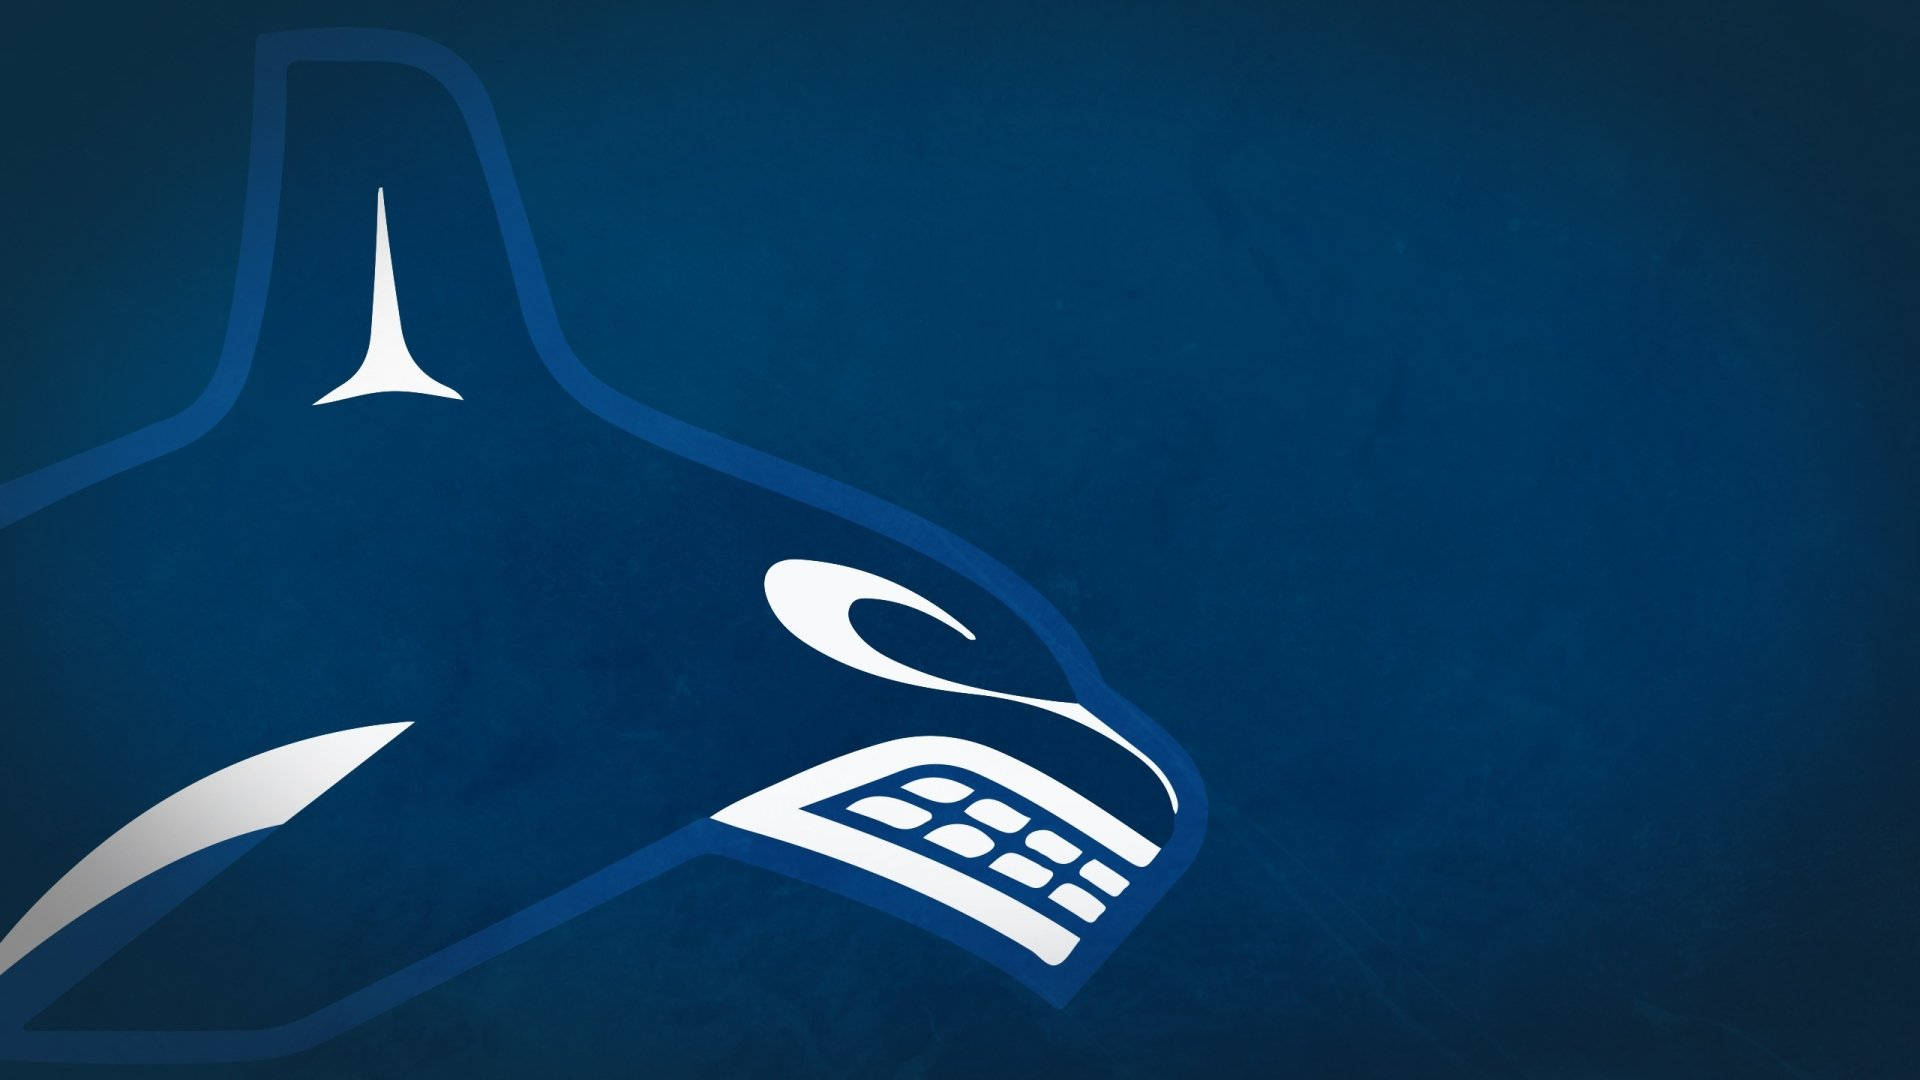 Íconoicónico Del Logotipo De La Orca De Los Vancouver Canucks. Fondo de pantalla